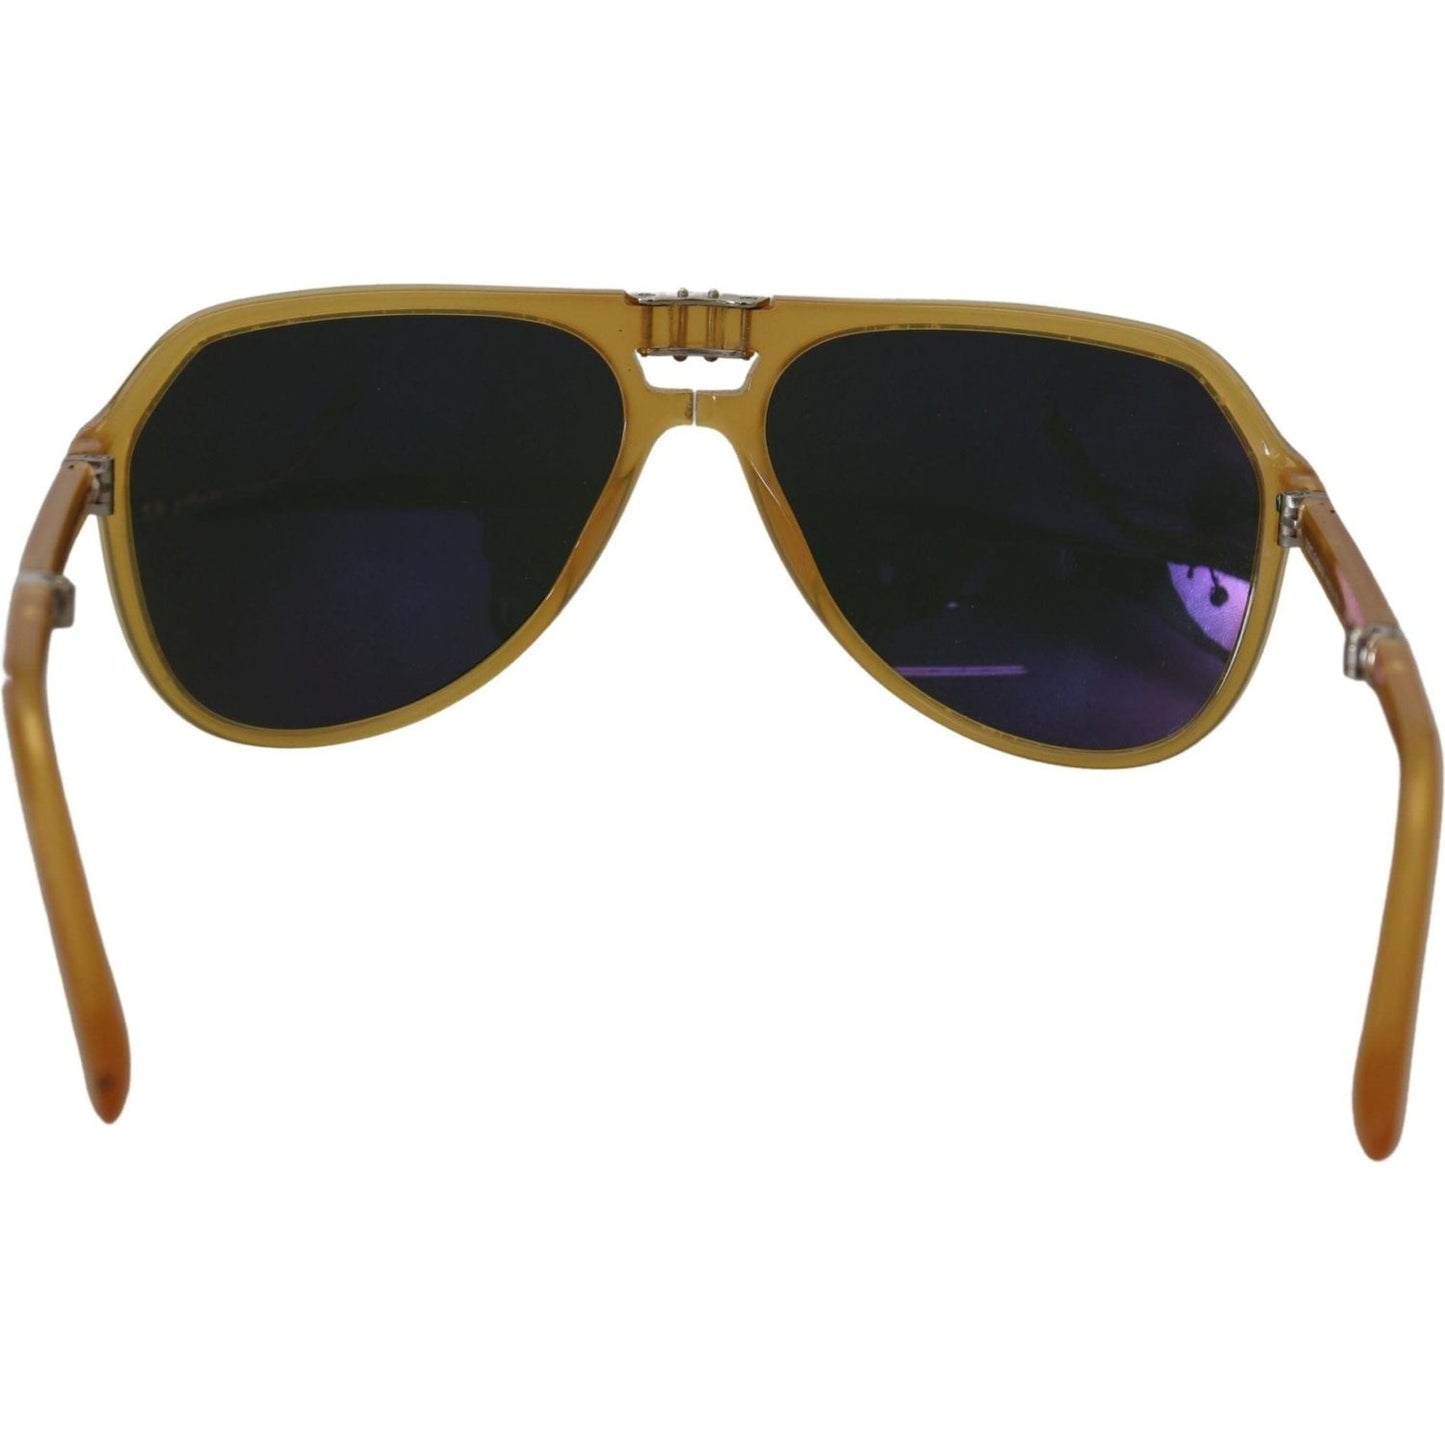 Dolce & Gabbana Chic Yellow Aviator Acetate Sunglasses yellow-acetate-black-lens-aviator-dg4196-sunglasses IMG_3754-scaled-57446b1f-946.jpg